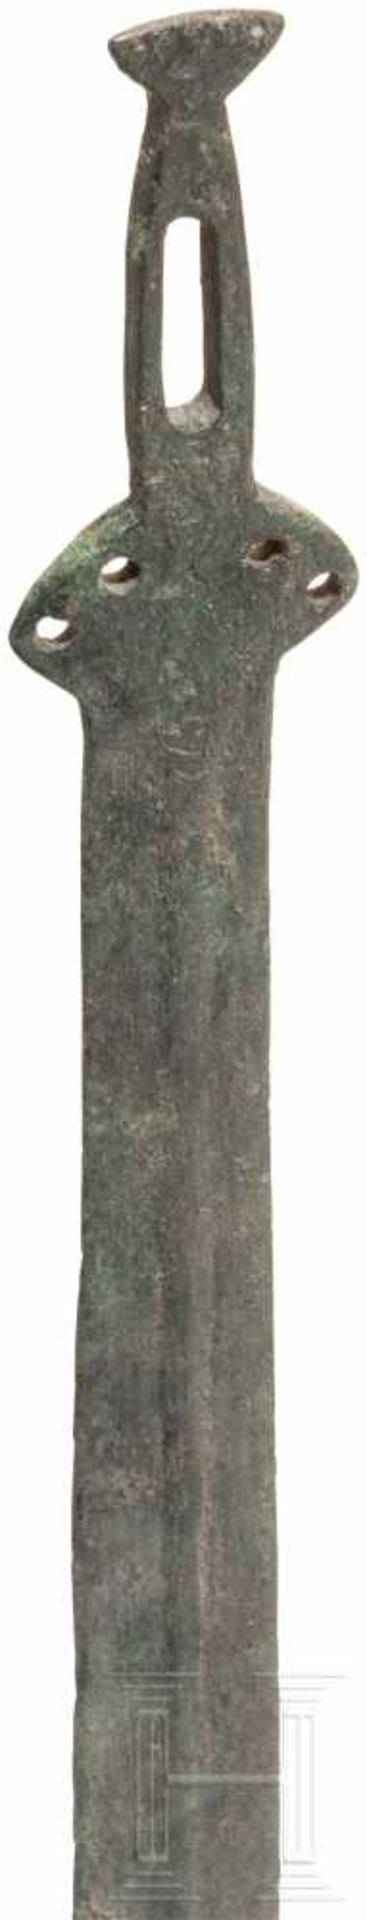 Griffzungenschwert, Frankreich, Späte Bronzezeit, 11. - 10. Jhdt. v. Chr.Bronze. Die Klinge des - Bild 3 aus 4